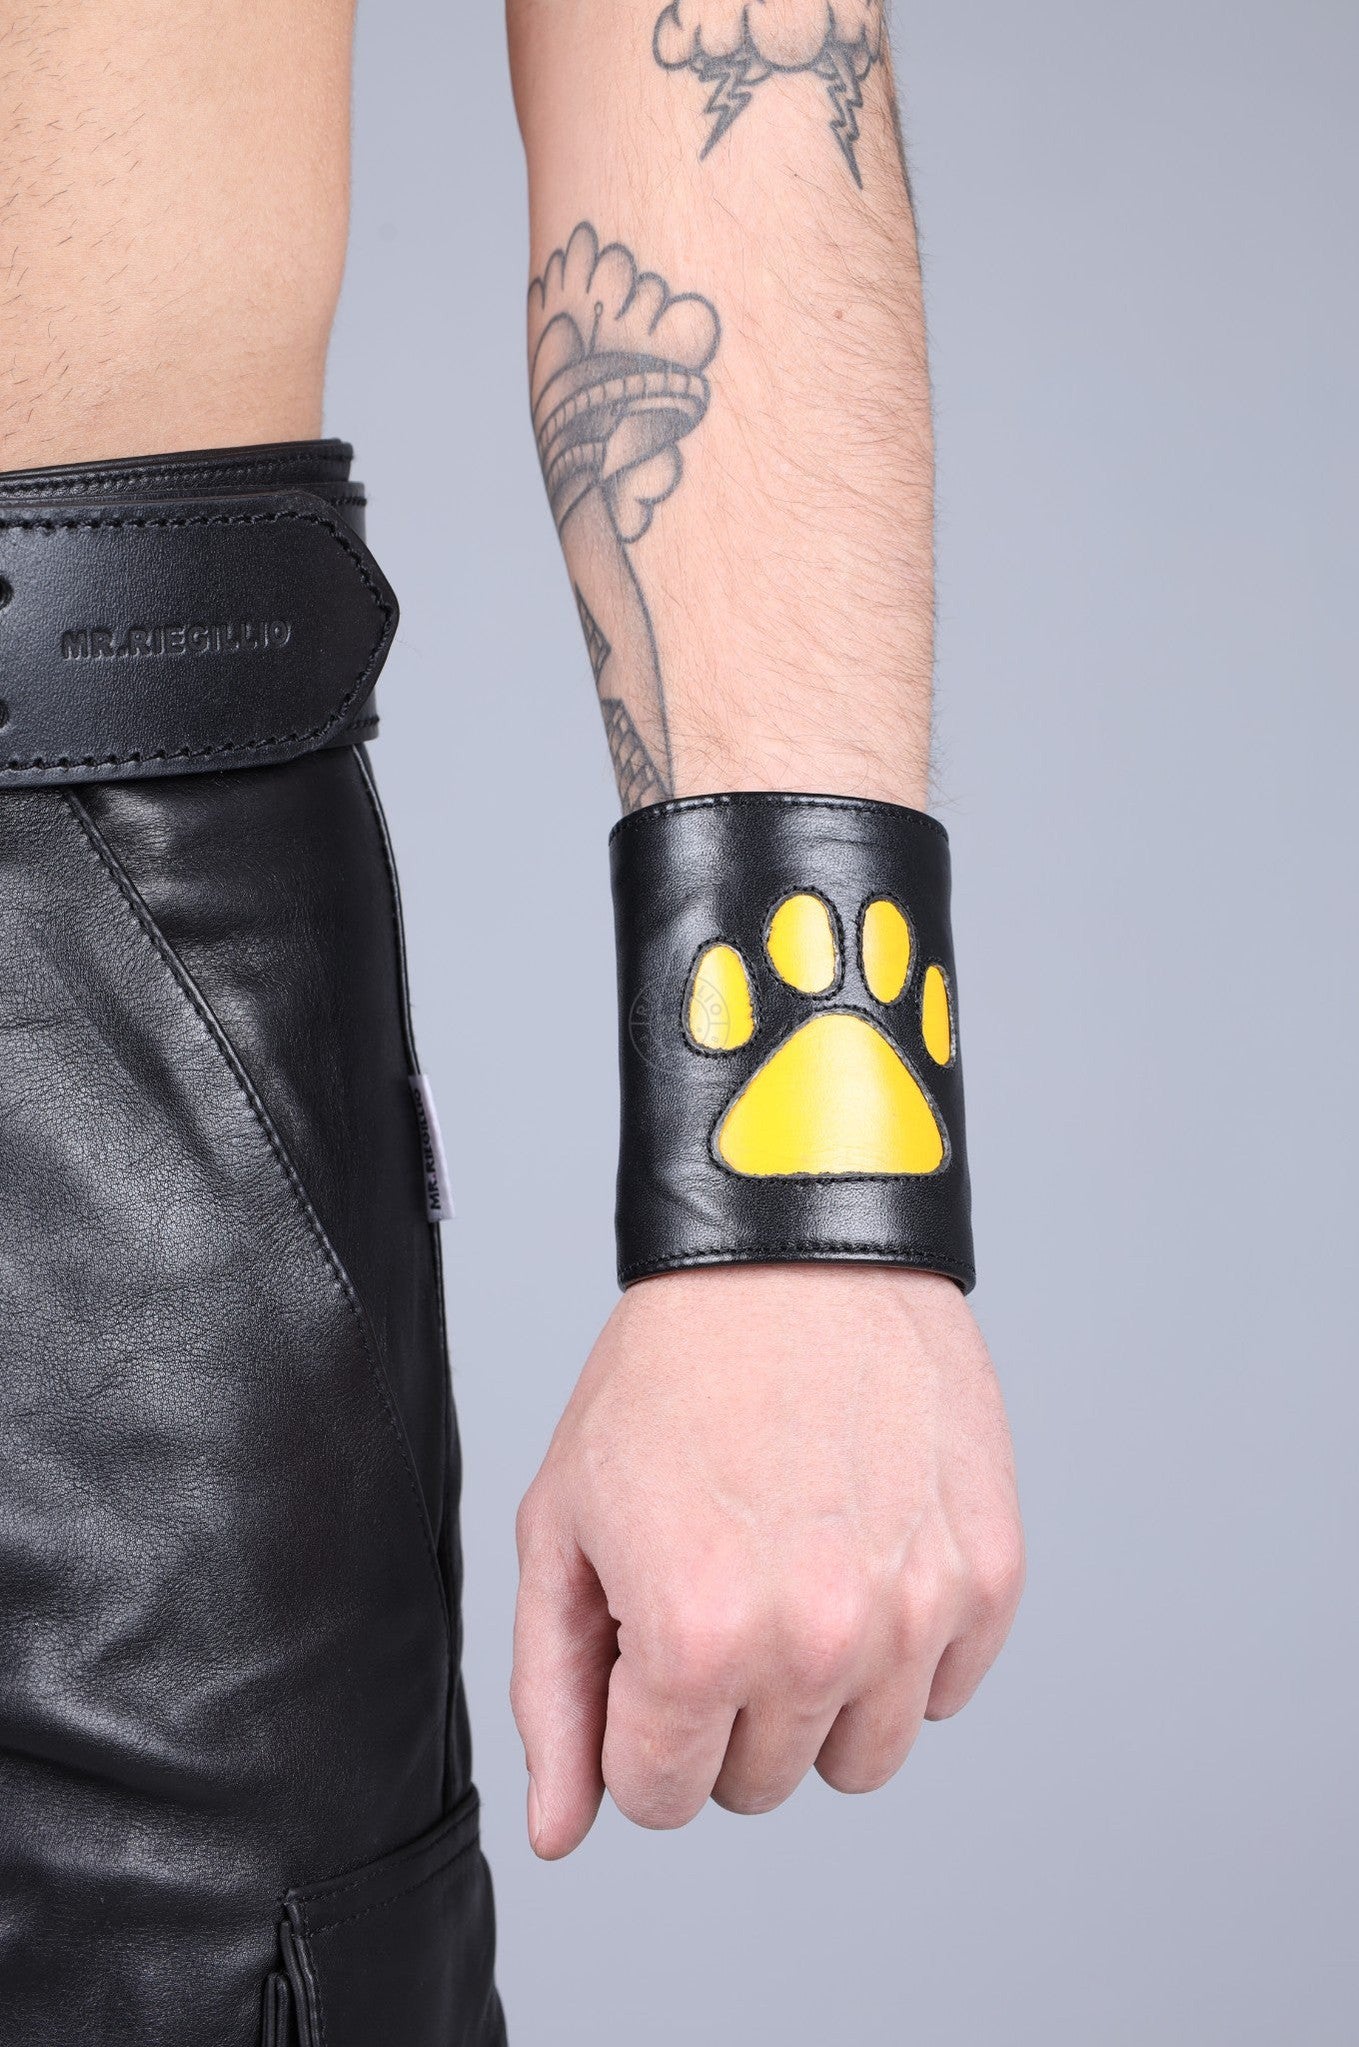 Black Leather Puppy Wrist Wallet - Yellow at MR. Riegillio